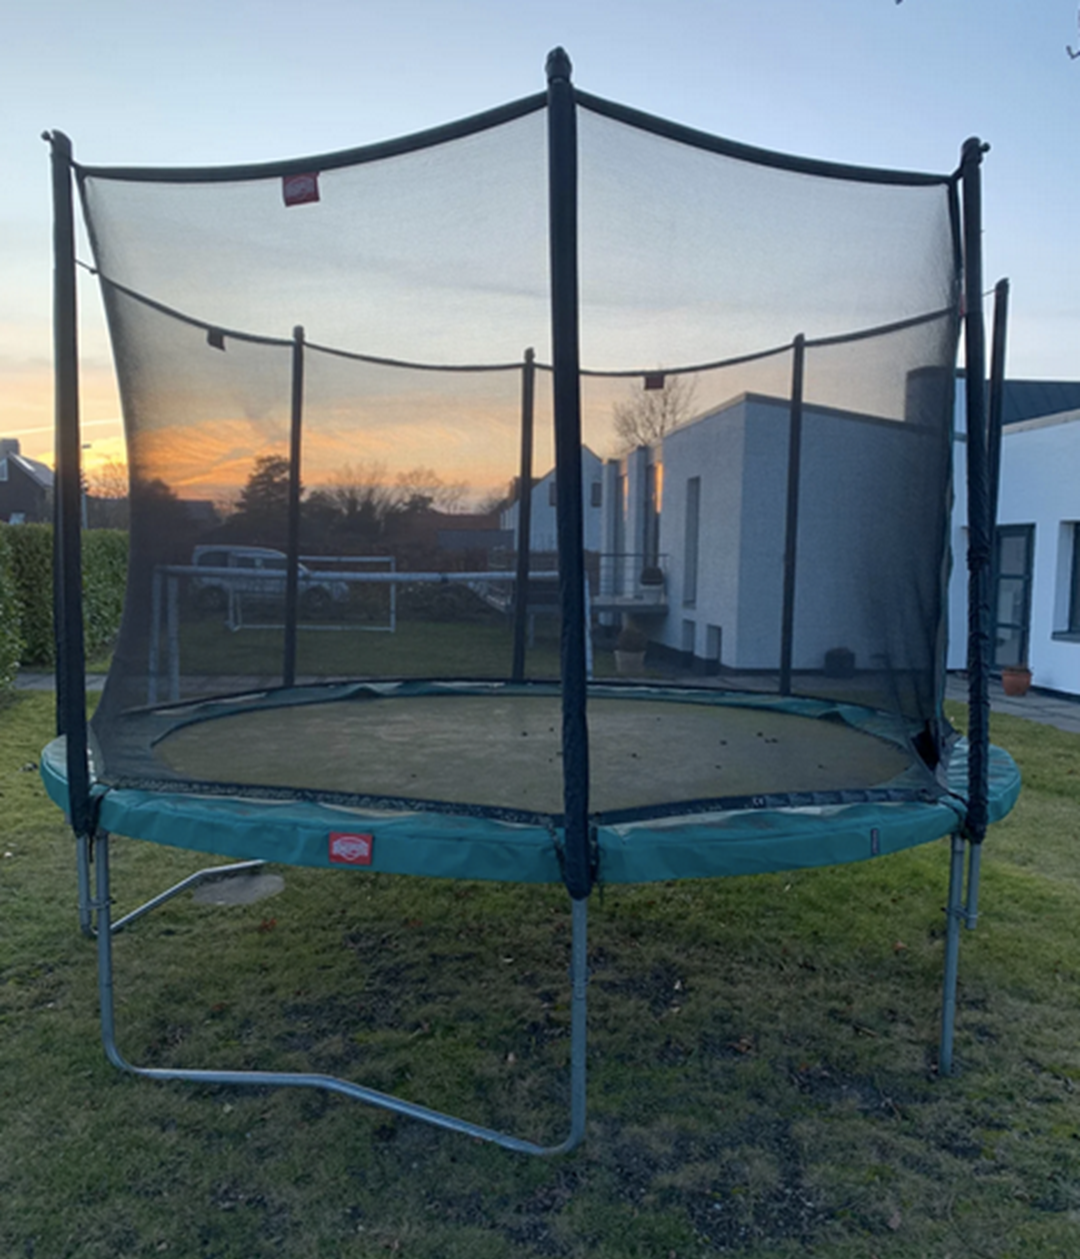 1.000 kroner. Det skal du være klar på at aflevere til Trine fra Risskov, hvis denne trampolin af mærket Berg Havetrampolin skal hjem og bo i din have.